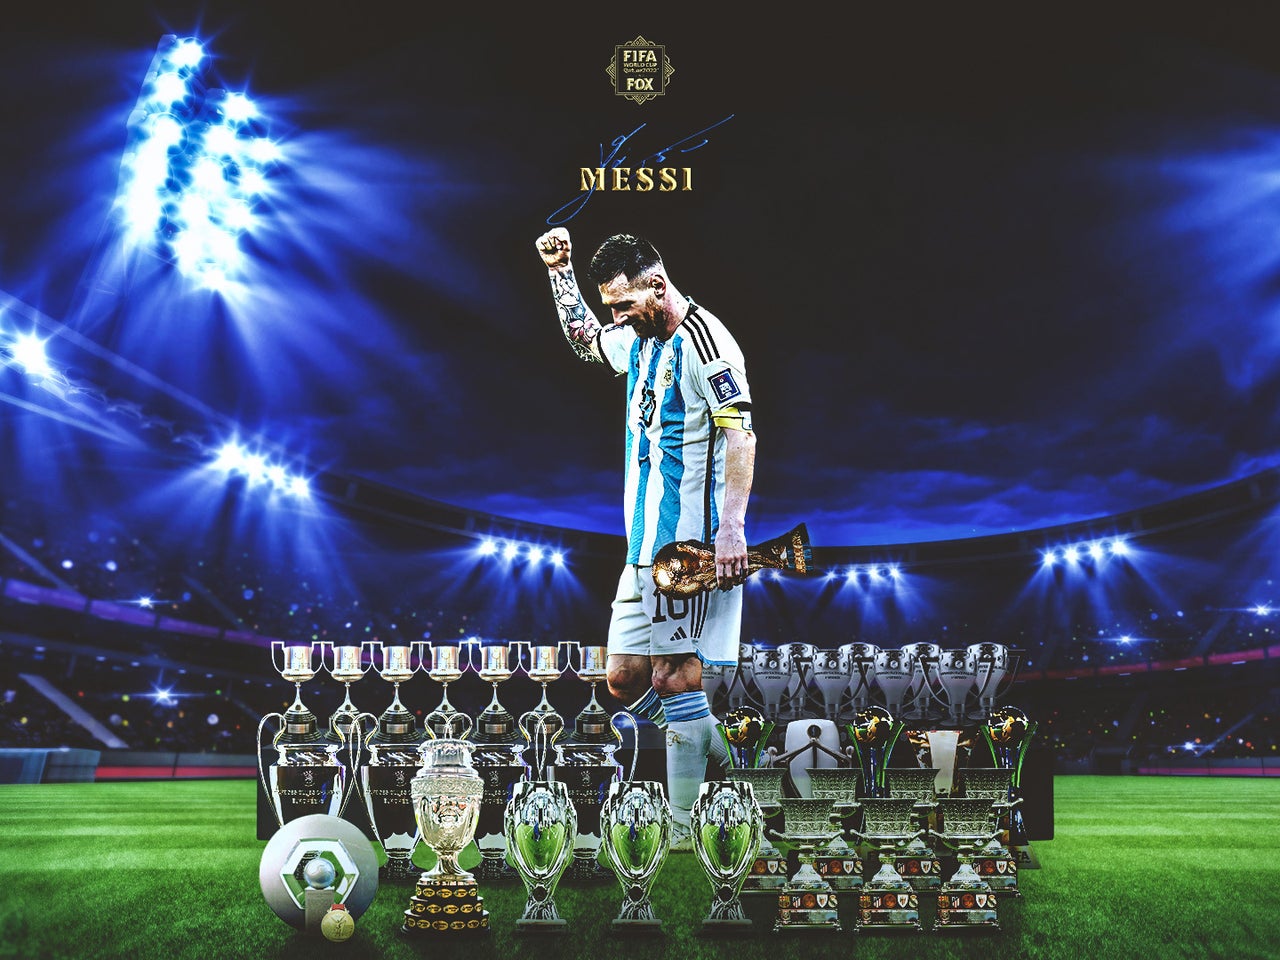 Bộ sưu tập Lionel Messi World Cup wallpapers sẽ khiến bạn ấn tượng với tài năng bóng đá của anh chàng, cùng những pha đi bóng vô cùng ấn tượng và khôn khéo. Hình nền này đầy sức mạnh và năng động, mang đến cảm giác tuyệt vời khi làm nền cho desktop hoặc màn hình của thiết bị di động.